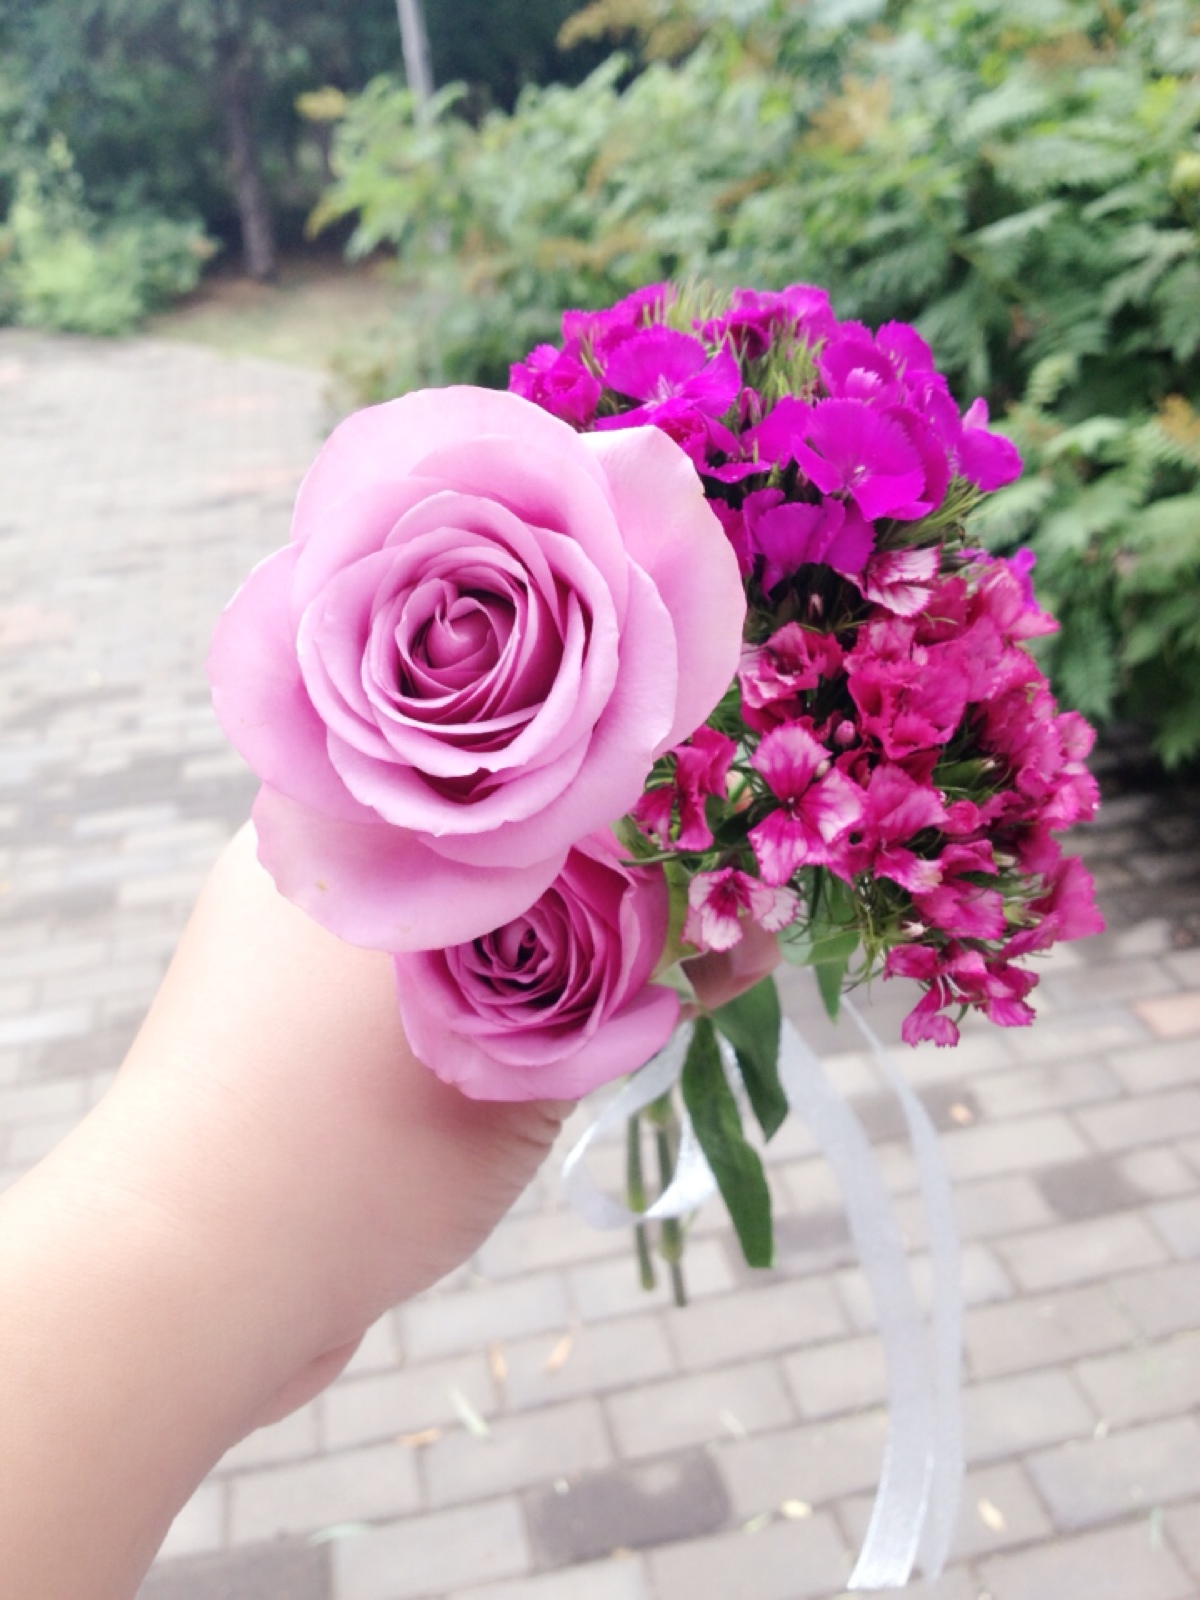 紫玫瑰 紫色的花朵 花束 - Pixabay上的免费照片 - Pixabay